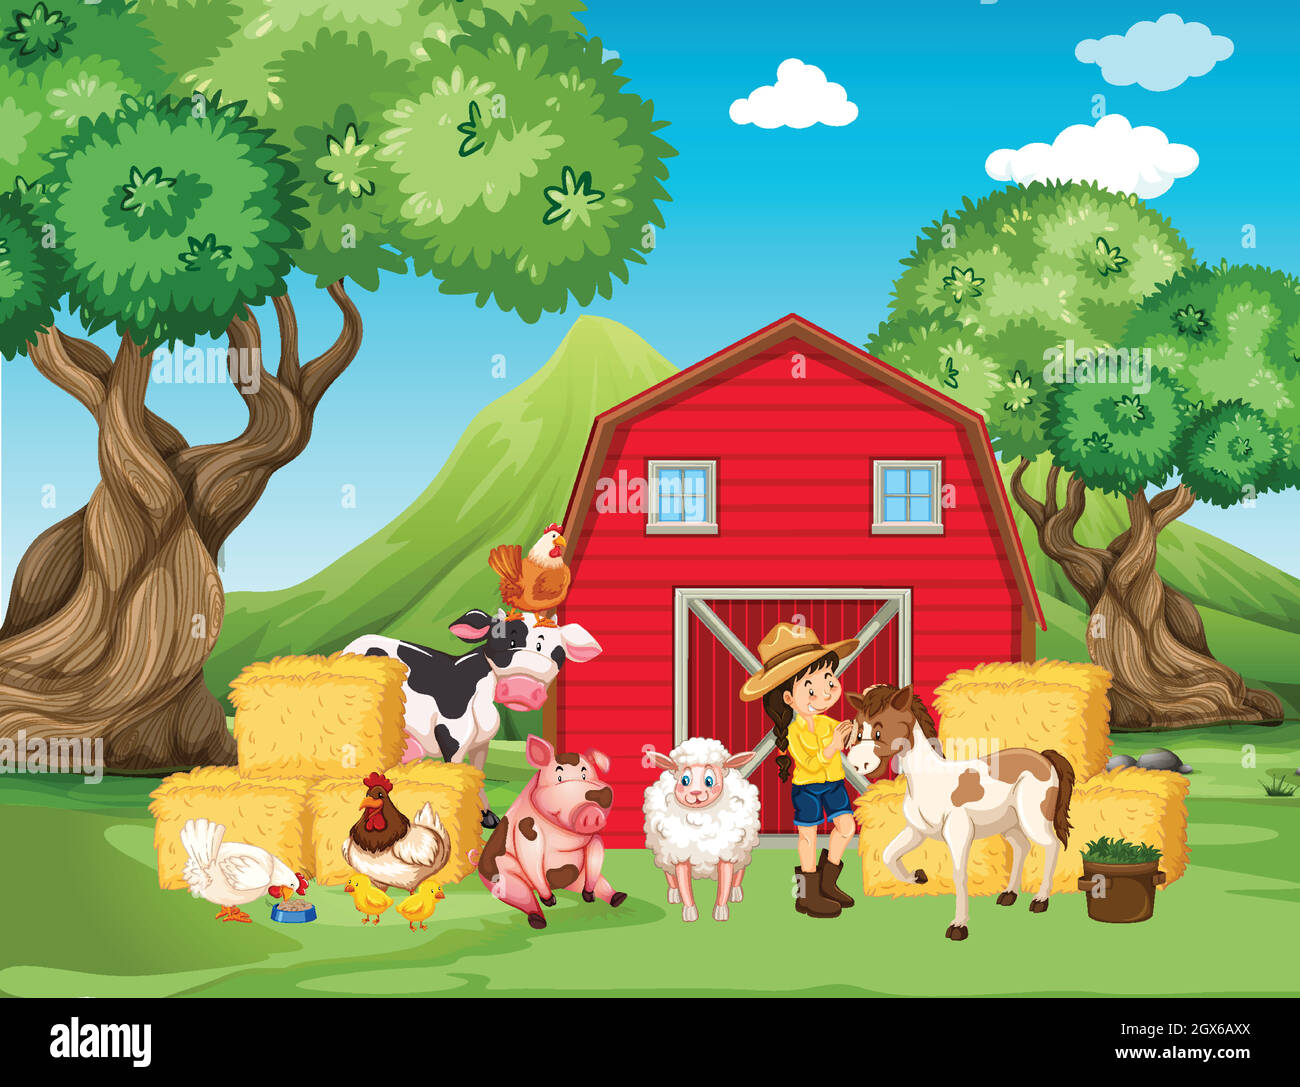 Farm scene with farmer and many animals on the farm Stock Vector